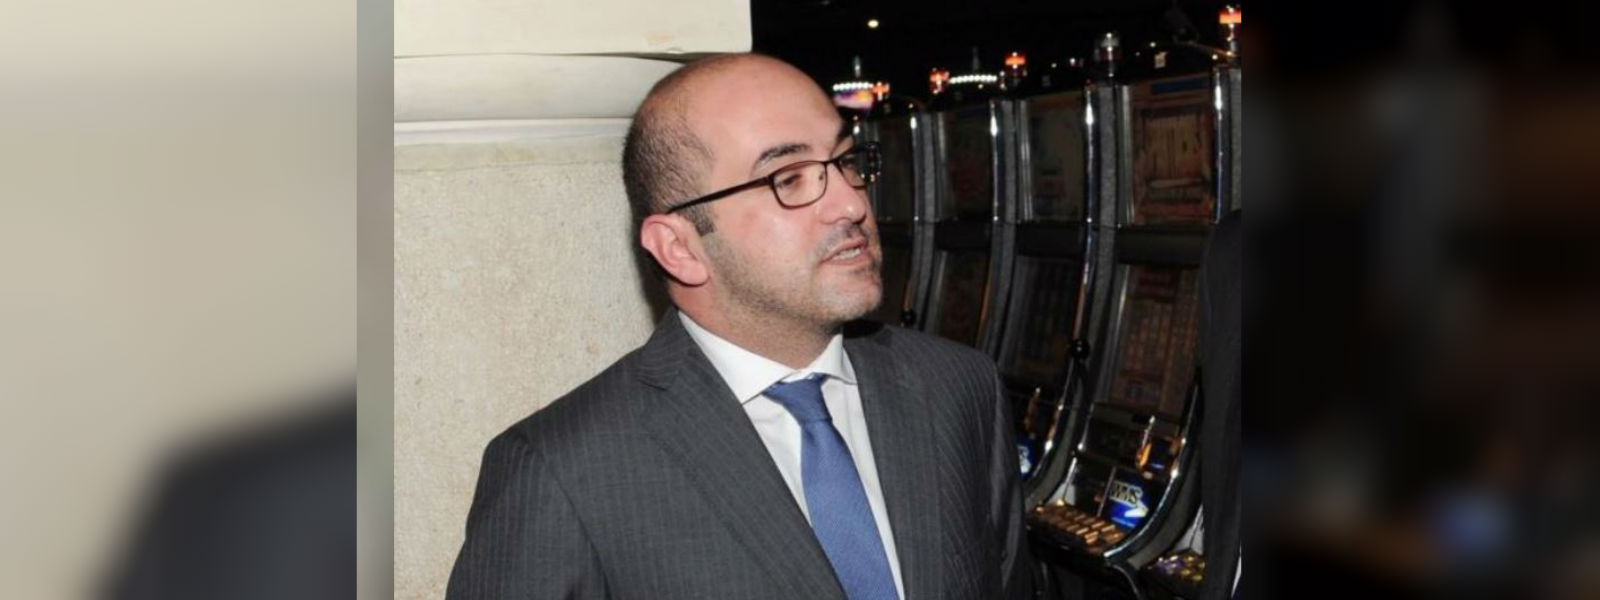 Malta journalist murder: Businessman arrested